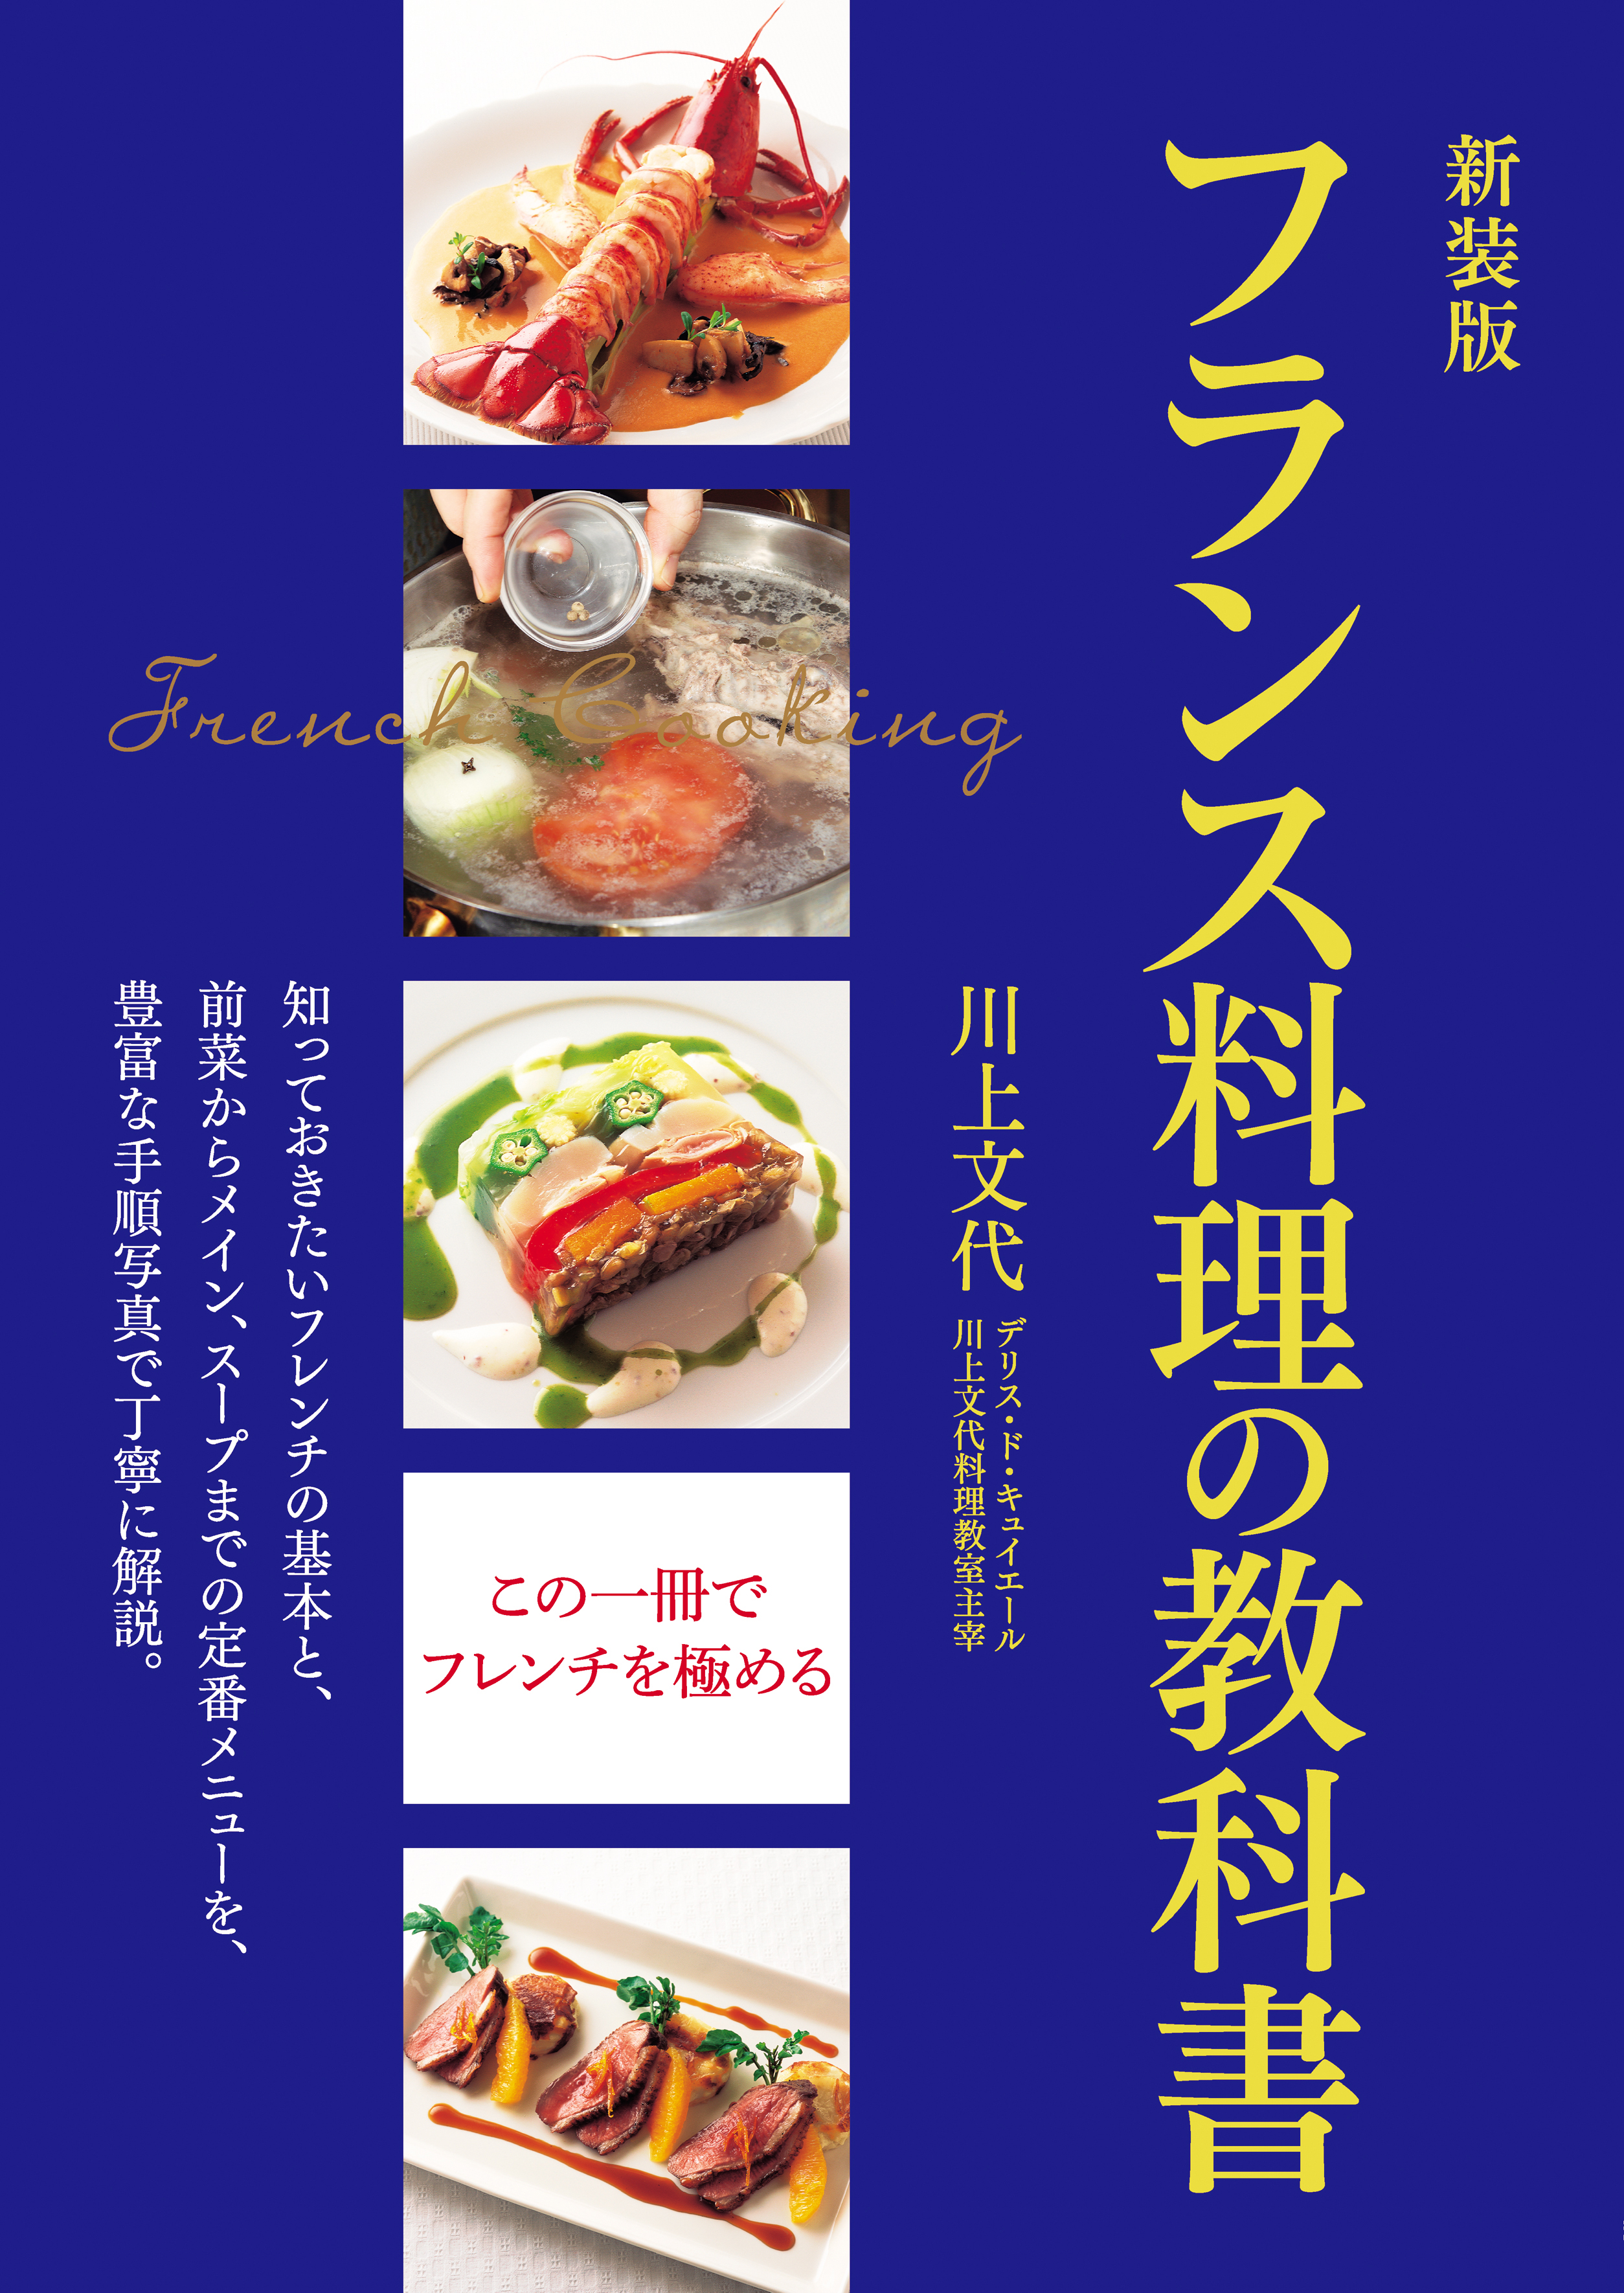 新装版 フランス料理の教科書 - 川上文代 - ビジネス・実用書・無料 